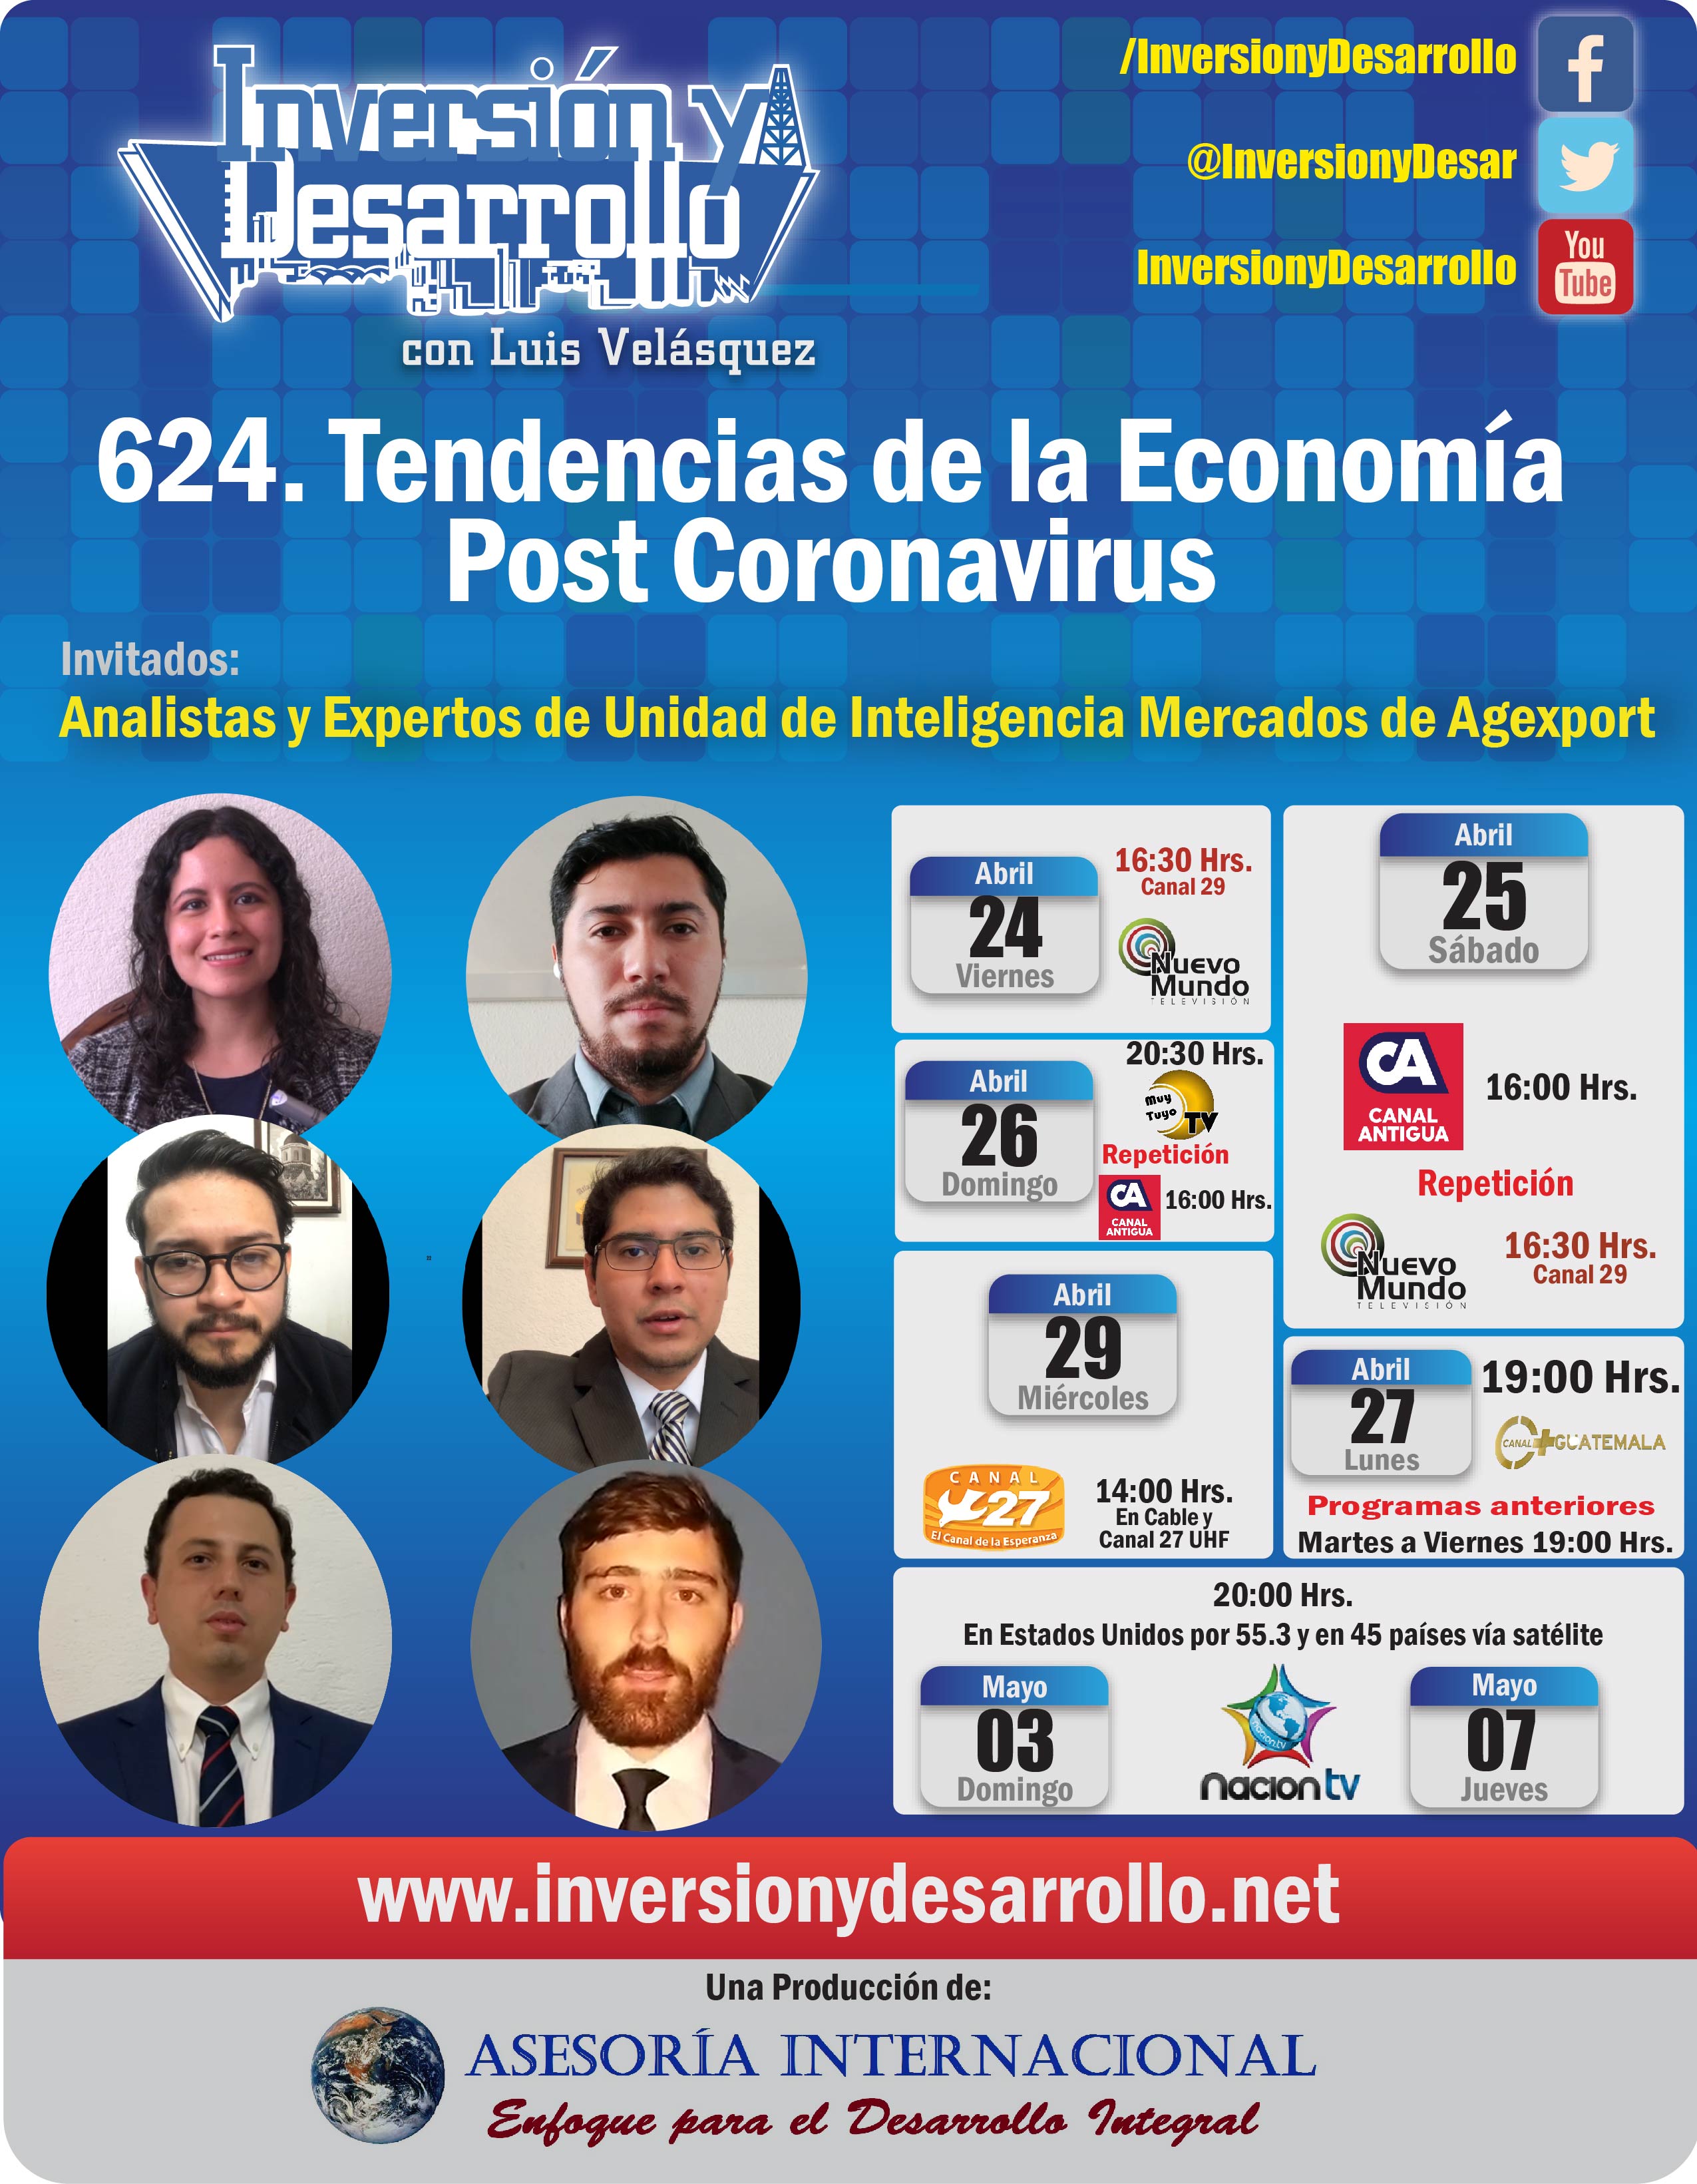 624. Tendencias de la Economía Post Coronavirus